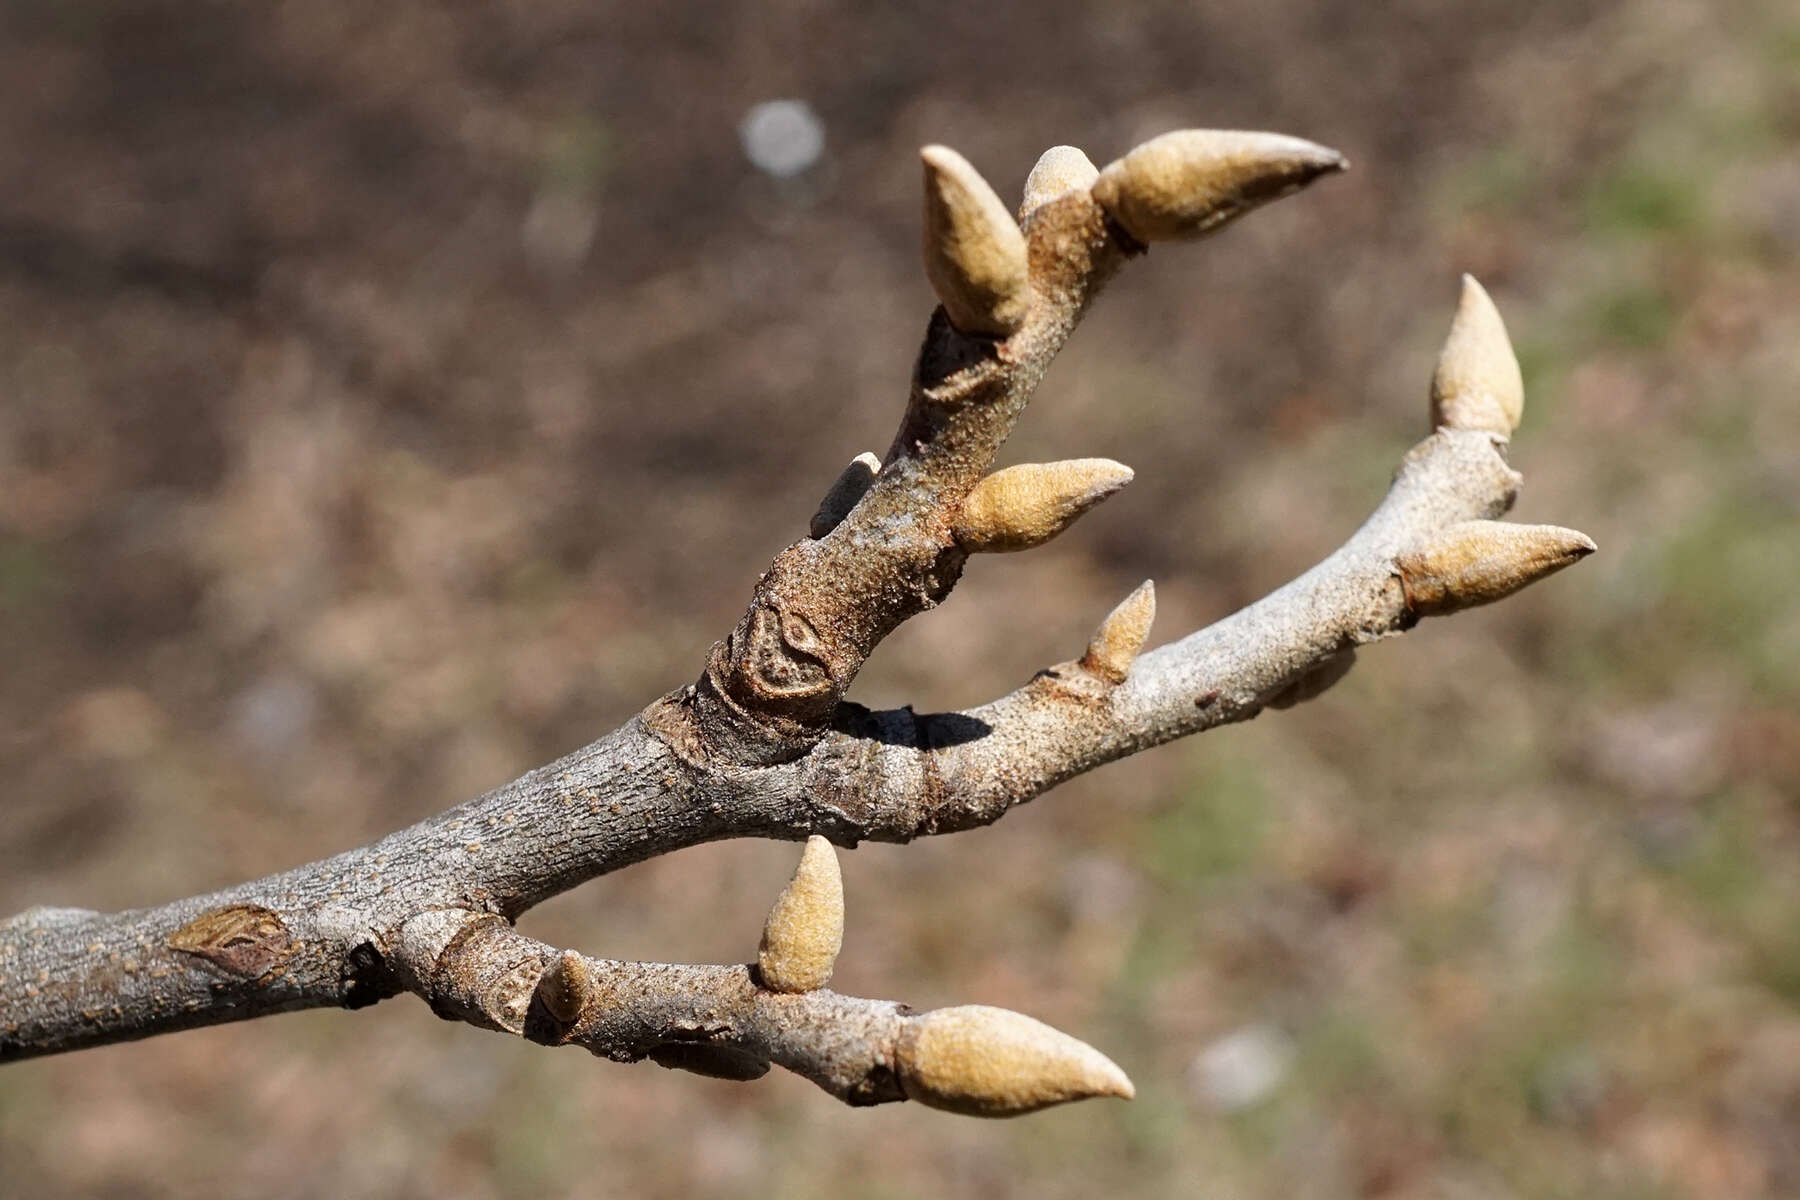 Image of nutmeg hickory